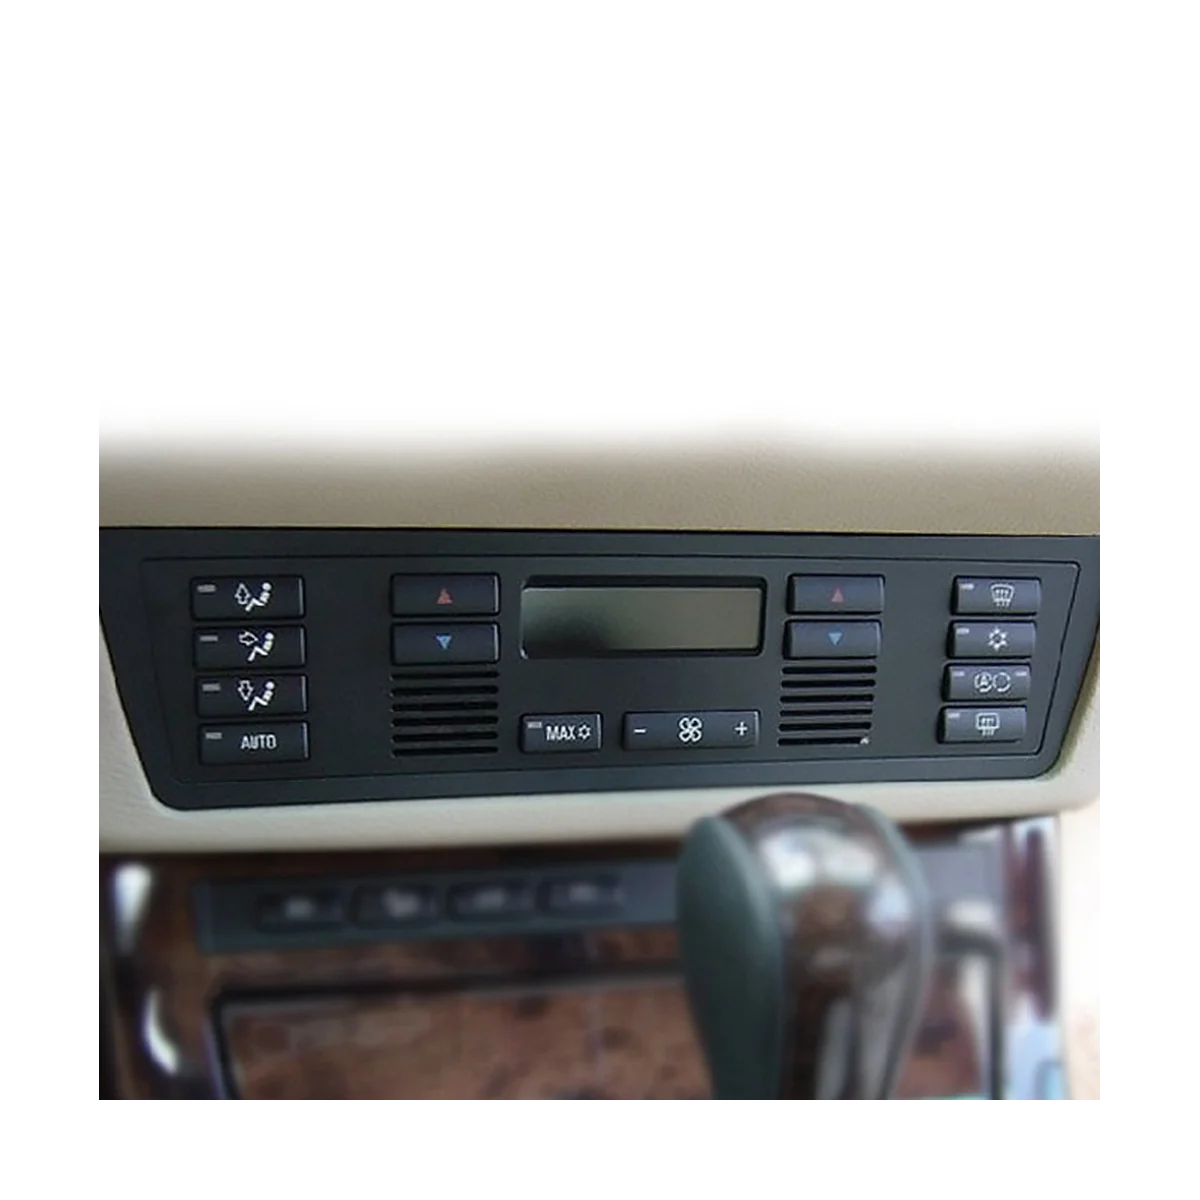 Замена колпачков для автомобильных кнопок Управления климатом, кондиционером, кнопками переключения панели управления, колпачками для BMW E39 E53 M5 X5